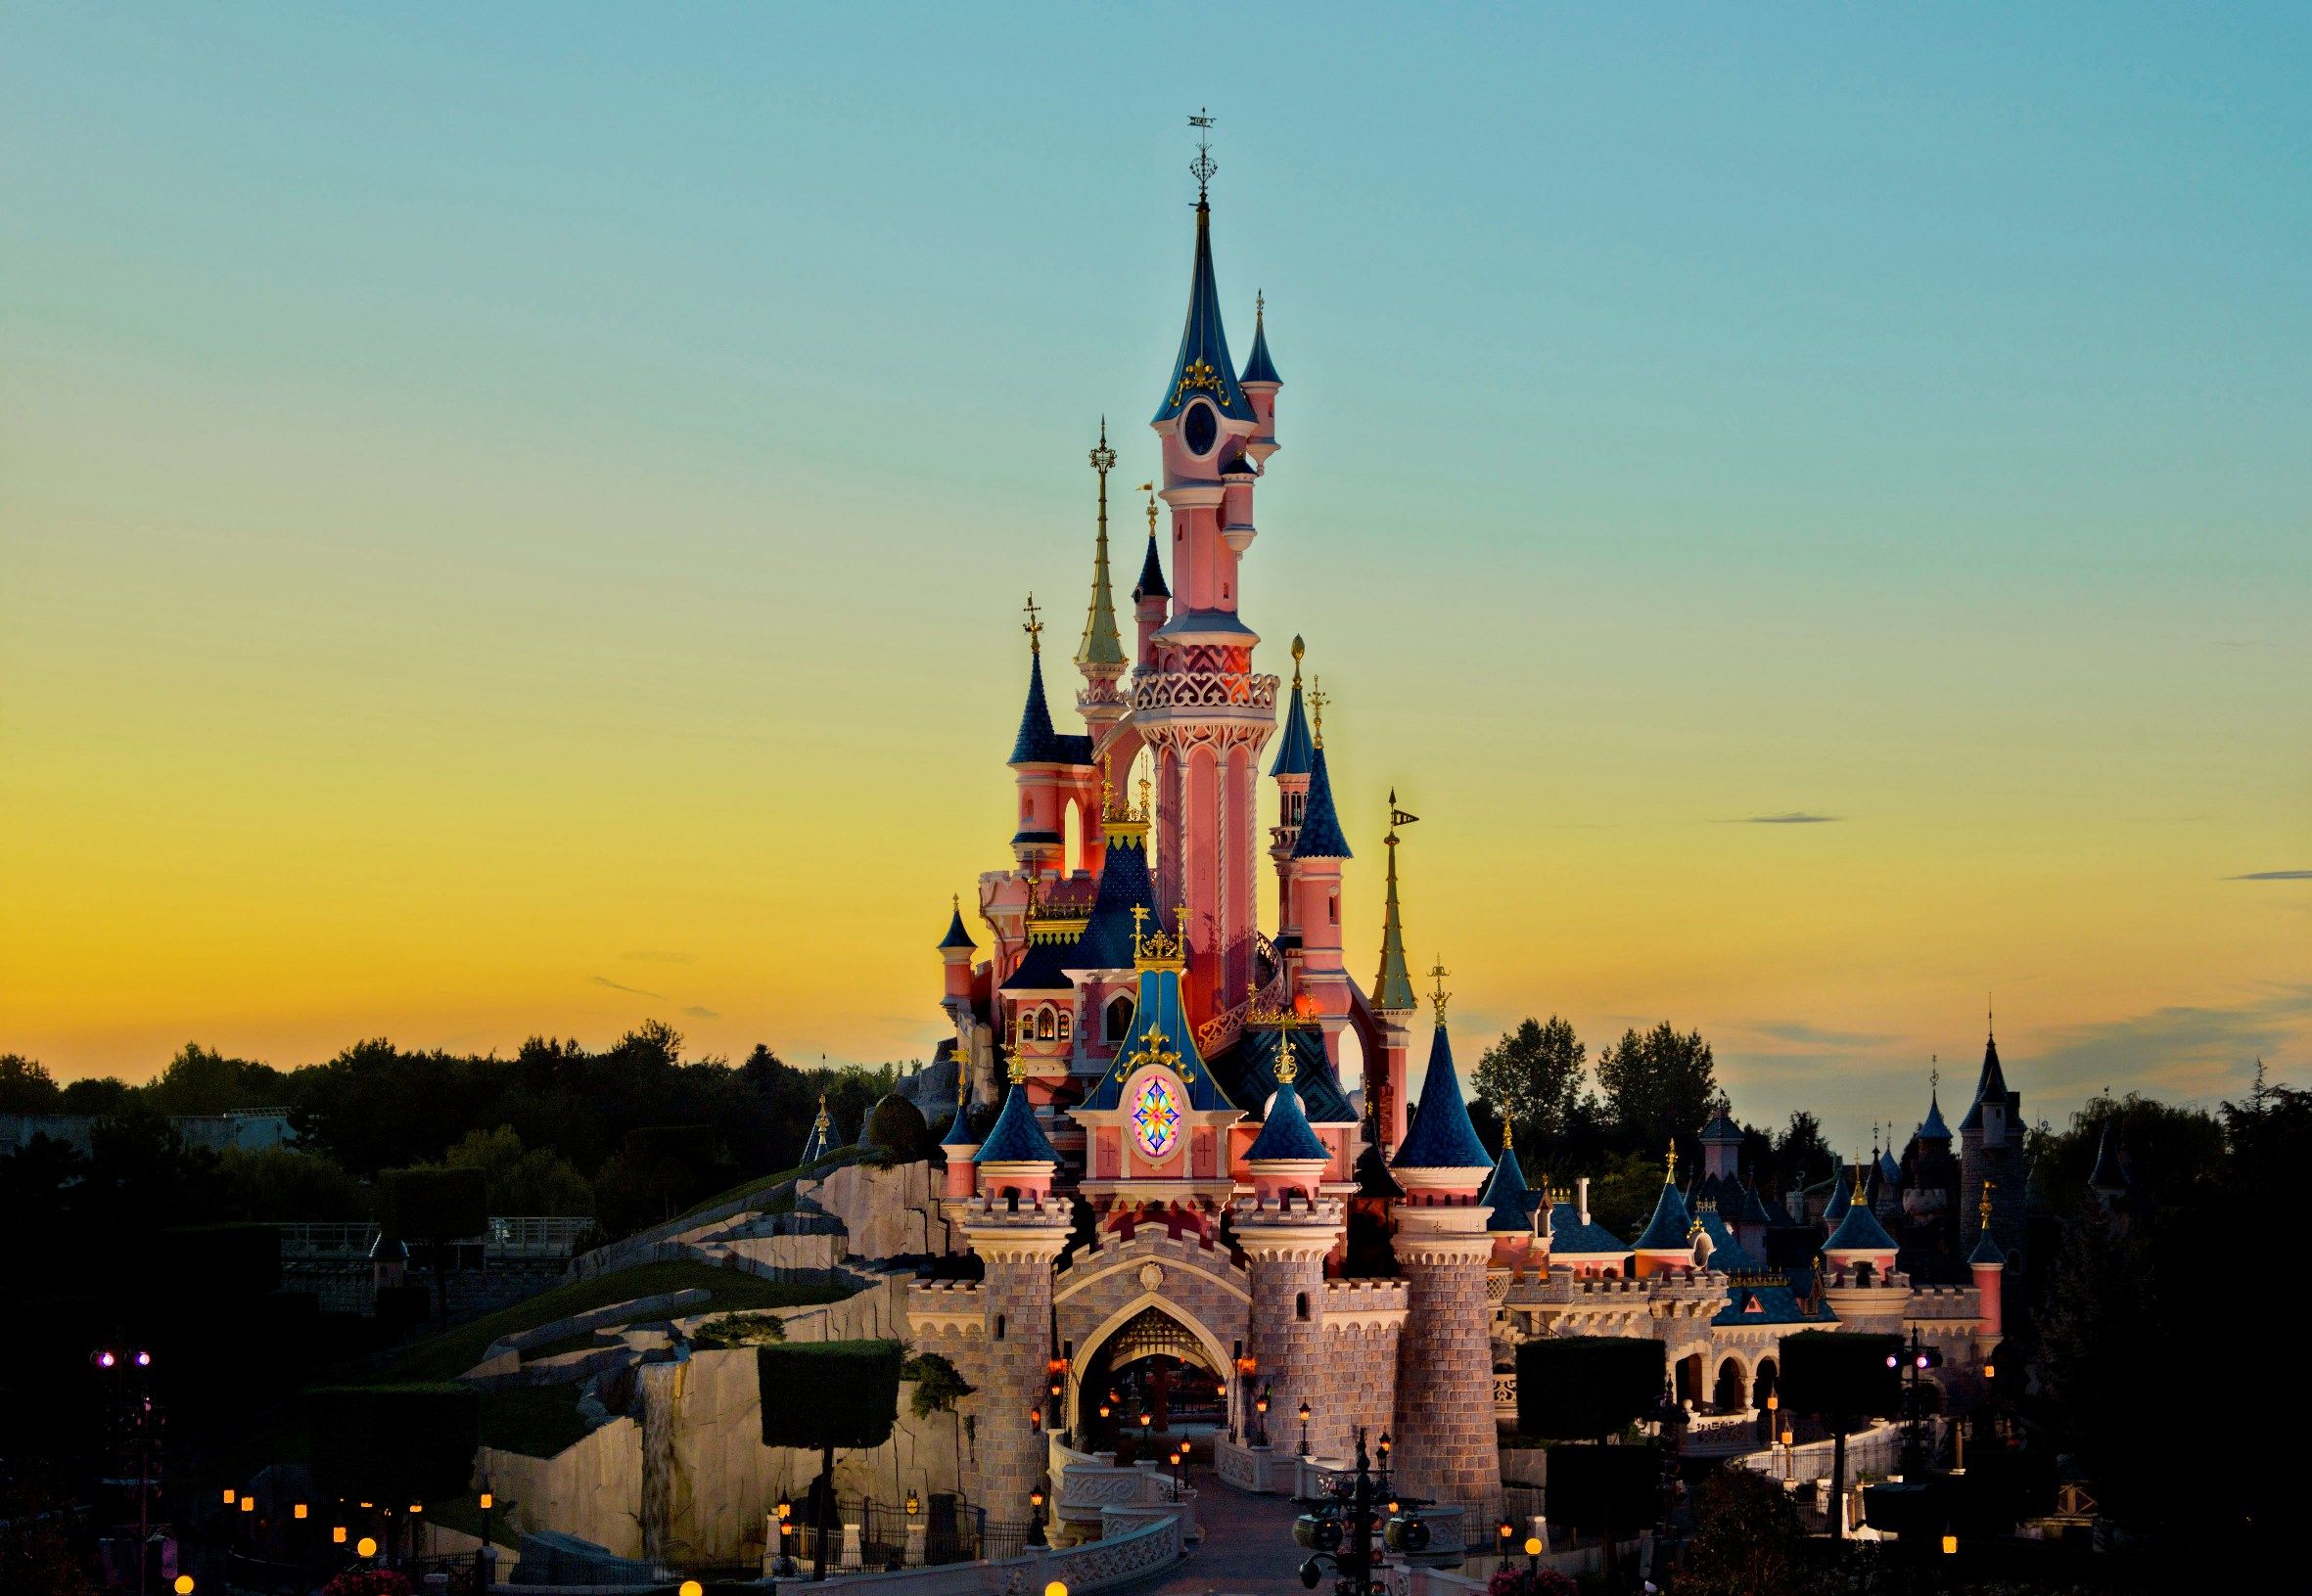 HD Disneyland Paris Fondos de pantalla y fotos | HD Travel Wallpapers